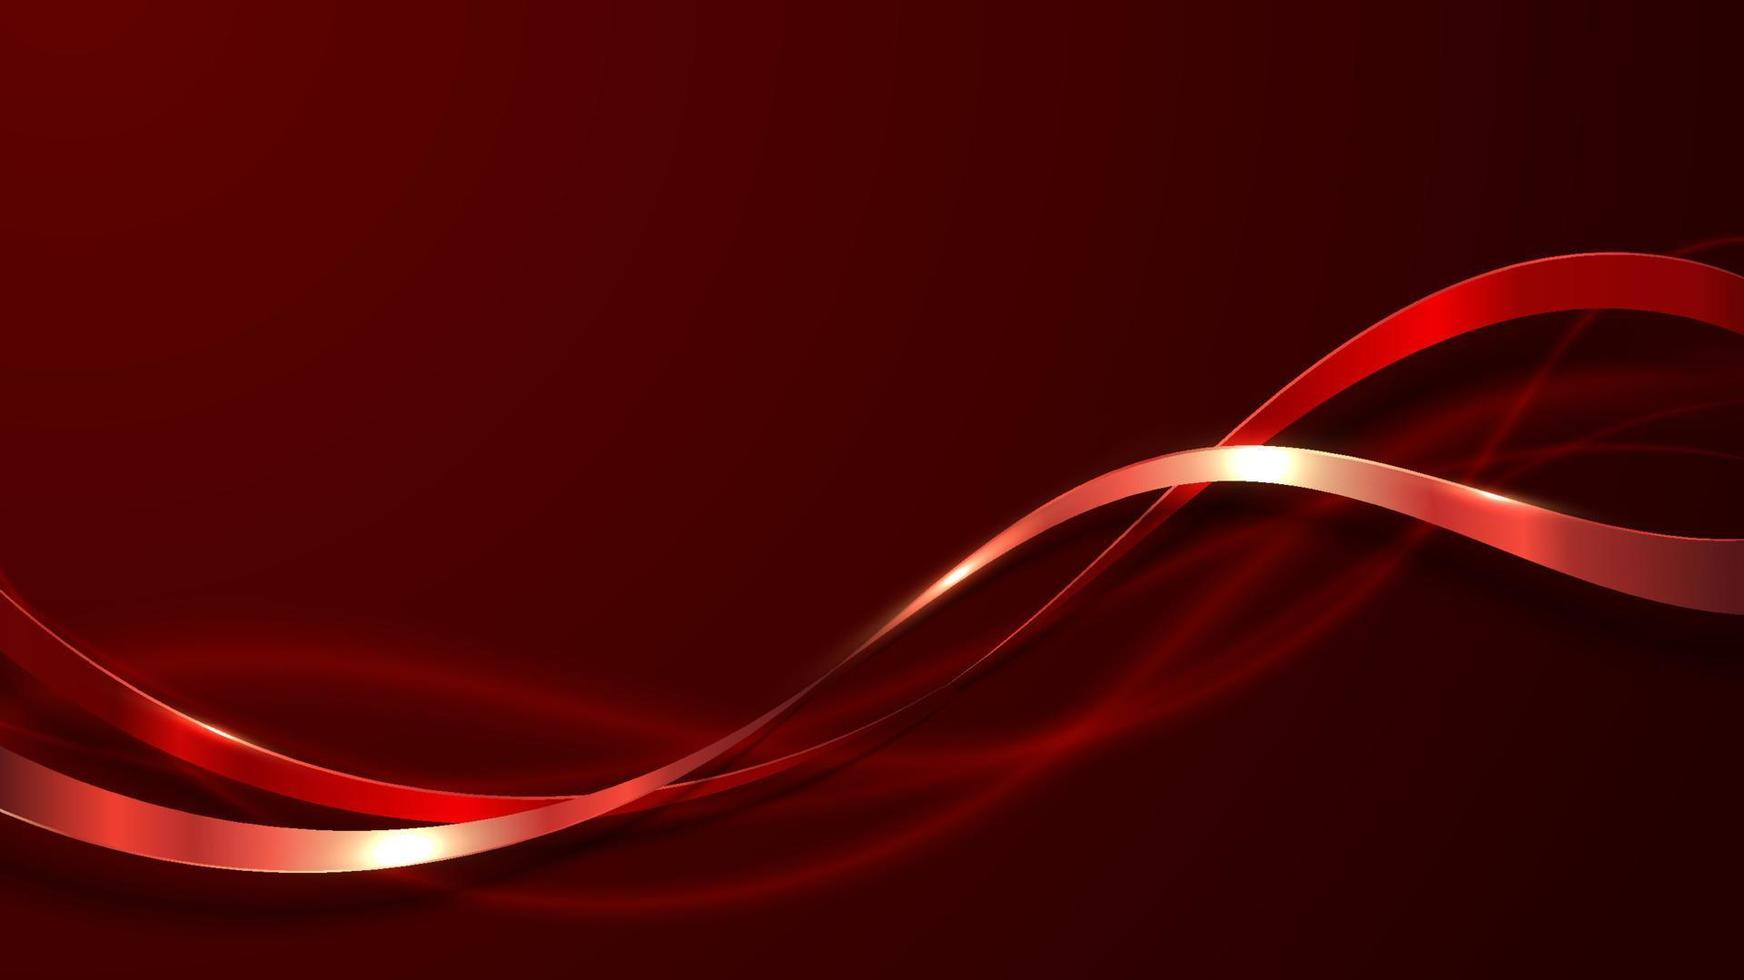 abstracte elegante 3d luxe rode kleur lint golf lijn decoratie en glitter verlichting op gradiënt rode achtergrond vector